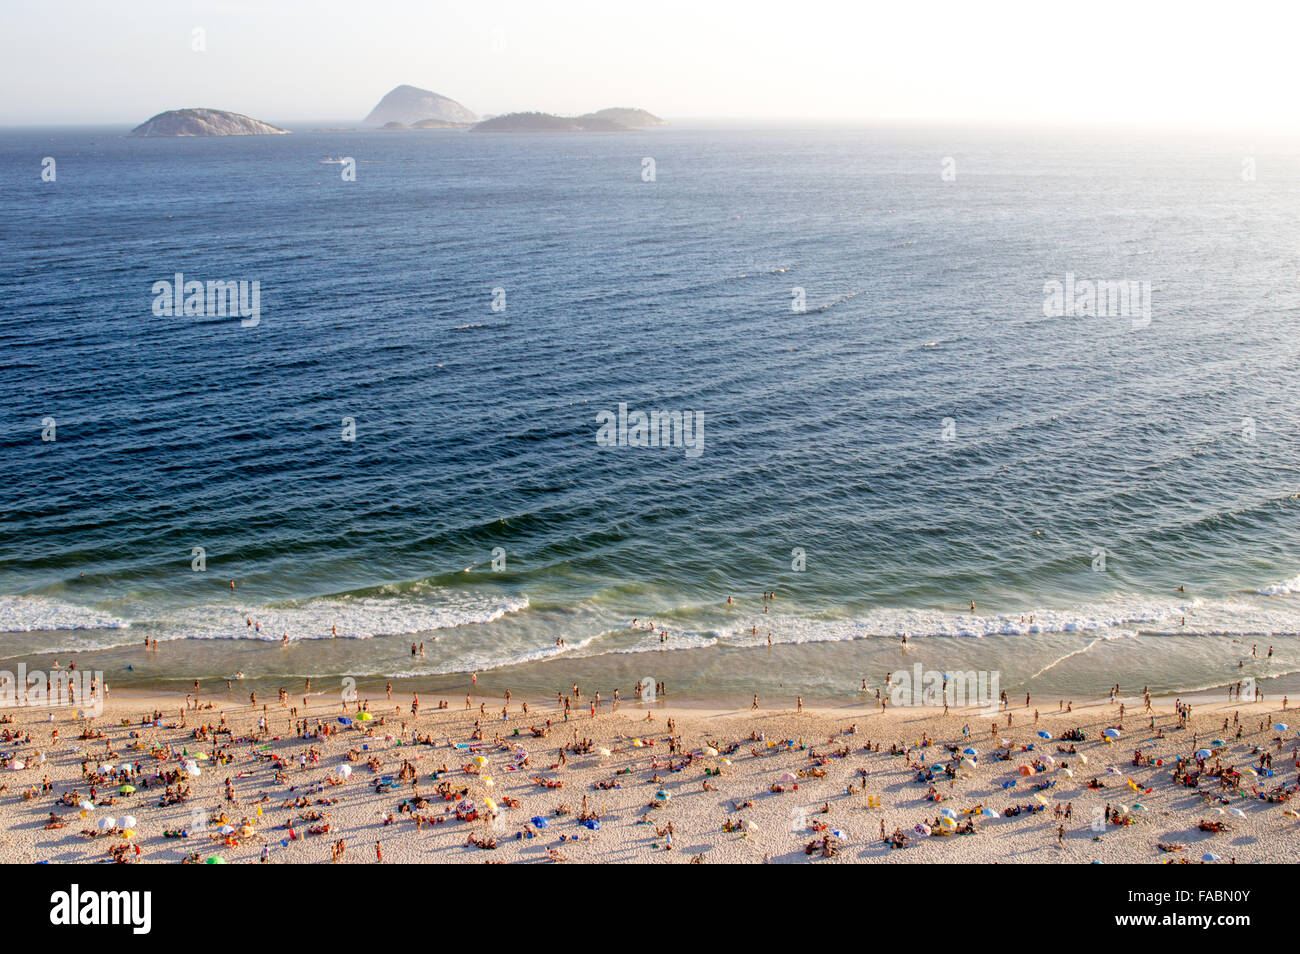 Vue aérienne de la plage à Rio de Janeiro, Brésil (Ipanema) Banque D'Images